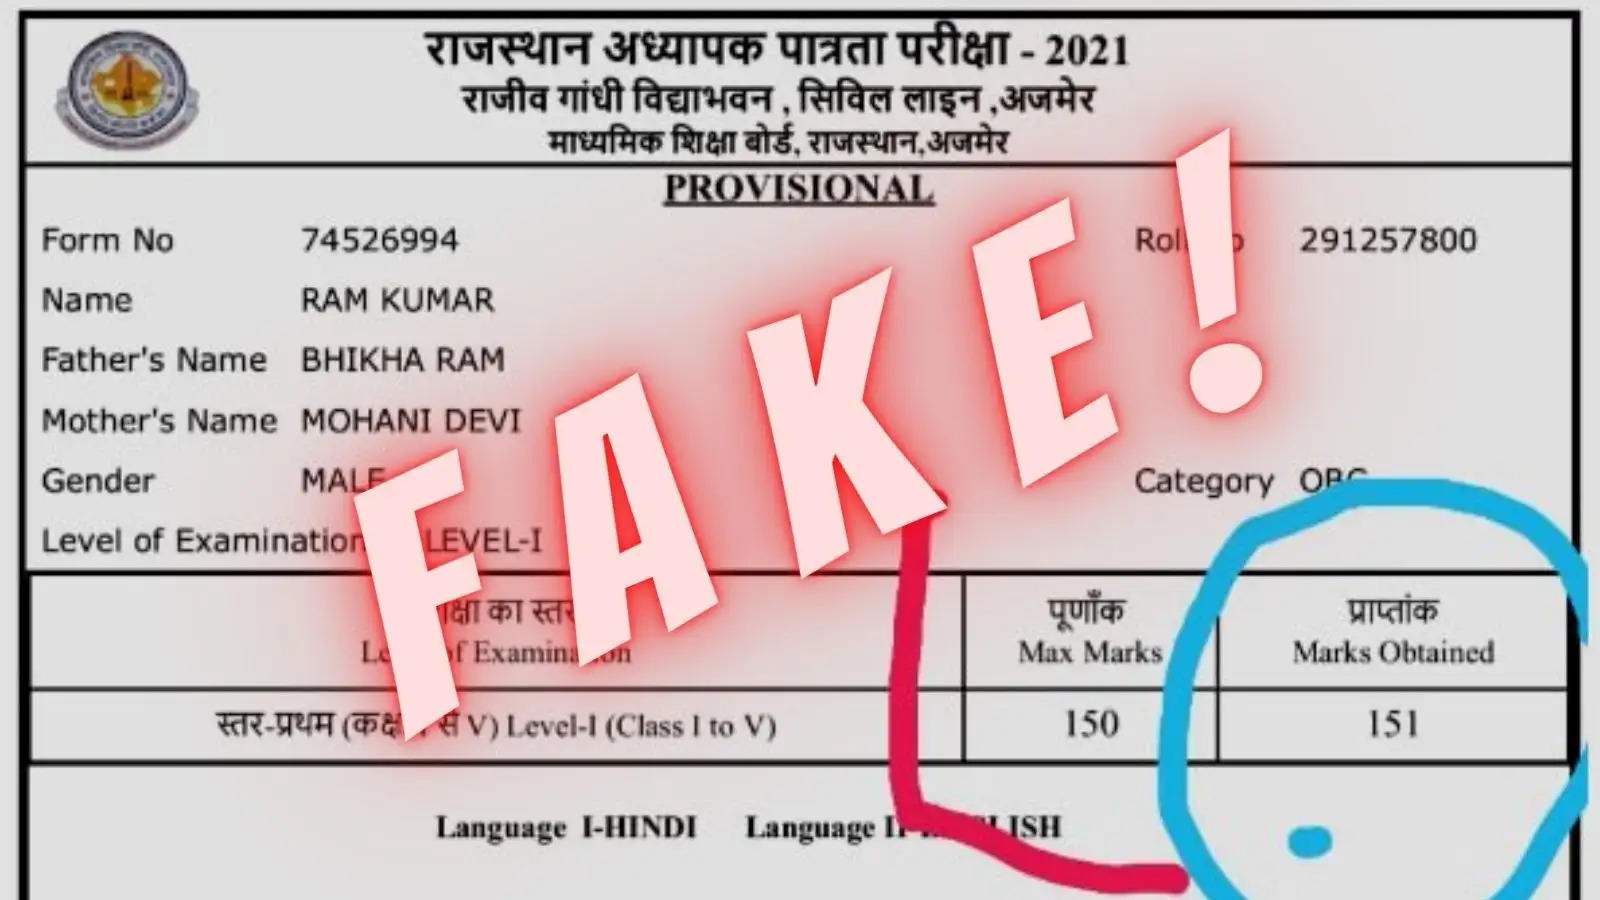 fake mark sheet reet examinations results 2021 ram kumar who is ram kumar reet fake marksheet